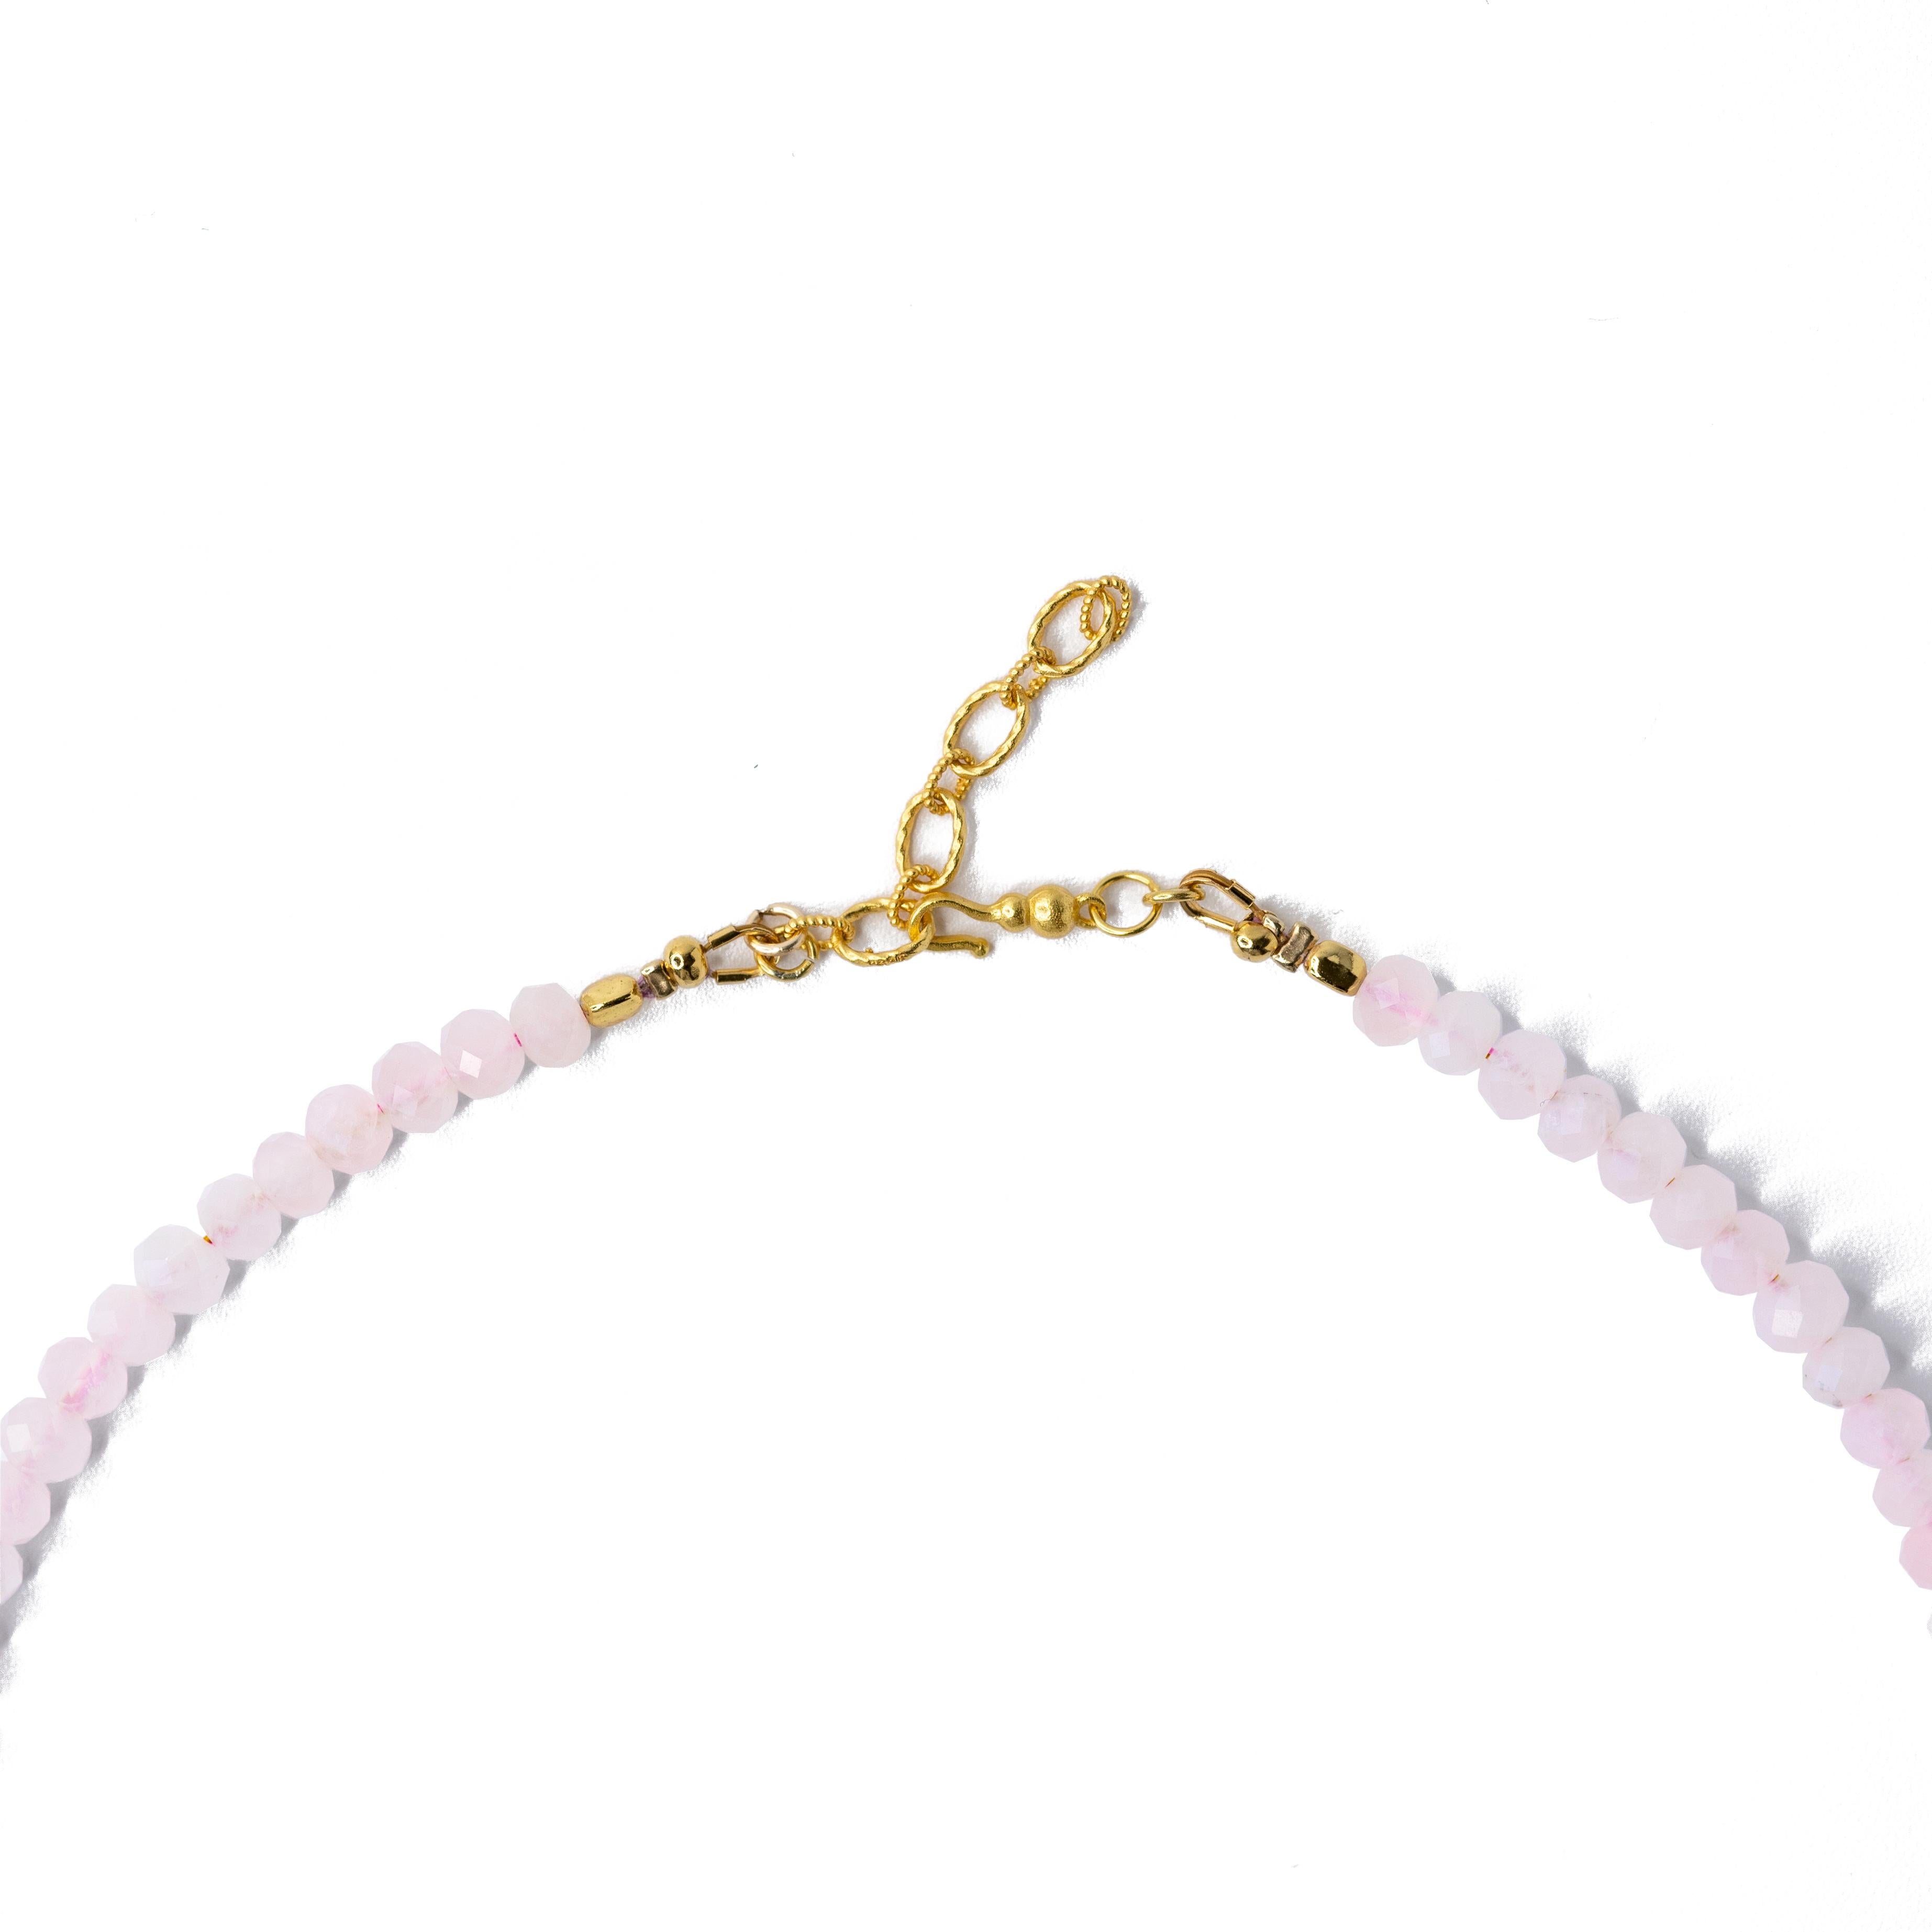 Schmücken Sie Ihr Dekolleté mit dieser atemberaubenden, handgefertigten Halskette mit Goldperlen aus Rosenquarz. Ihr einzigartiges Perlendesign verleiht Ihrem Outfit einen Hauch von Eleganz und macht sie zu einem perfekten Accessoire für jede